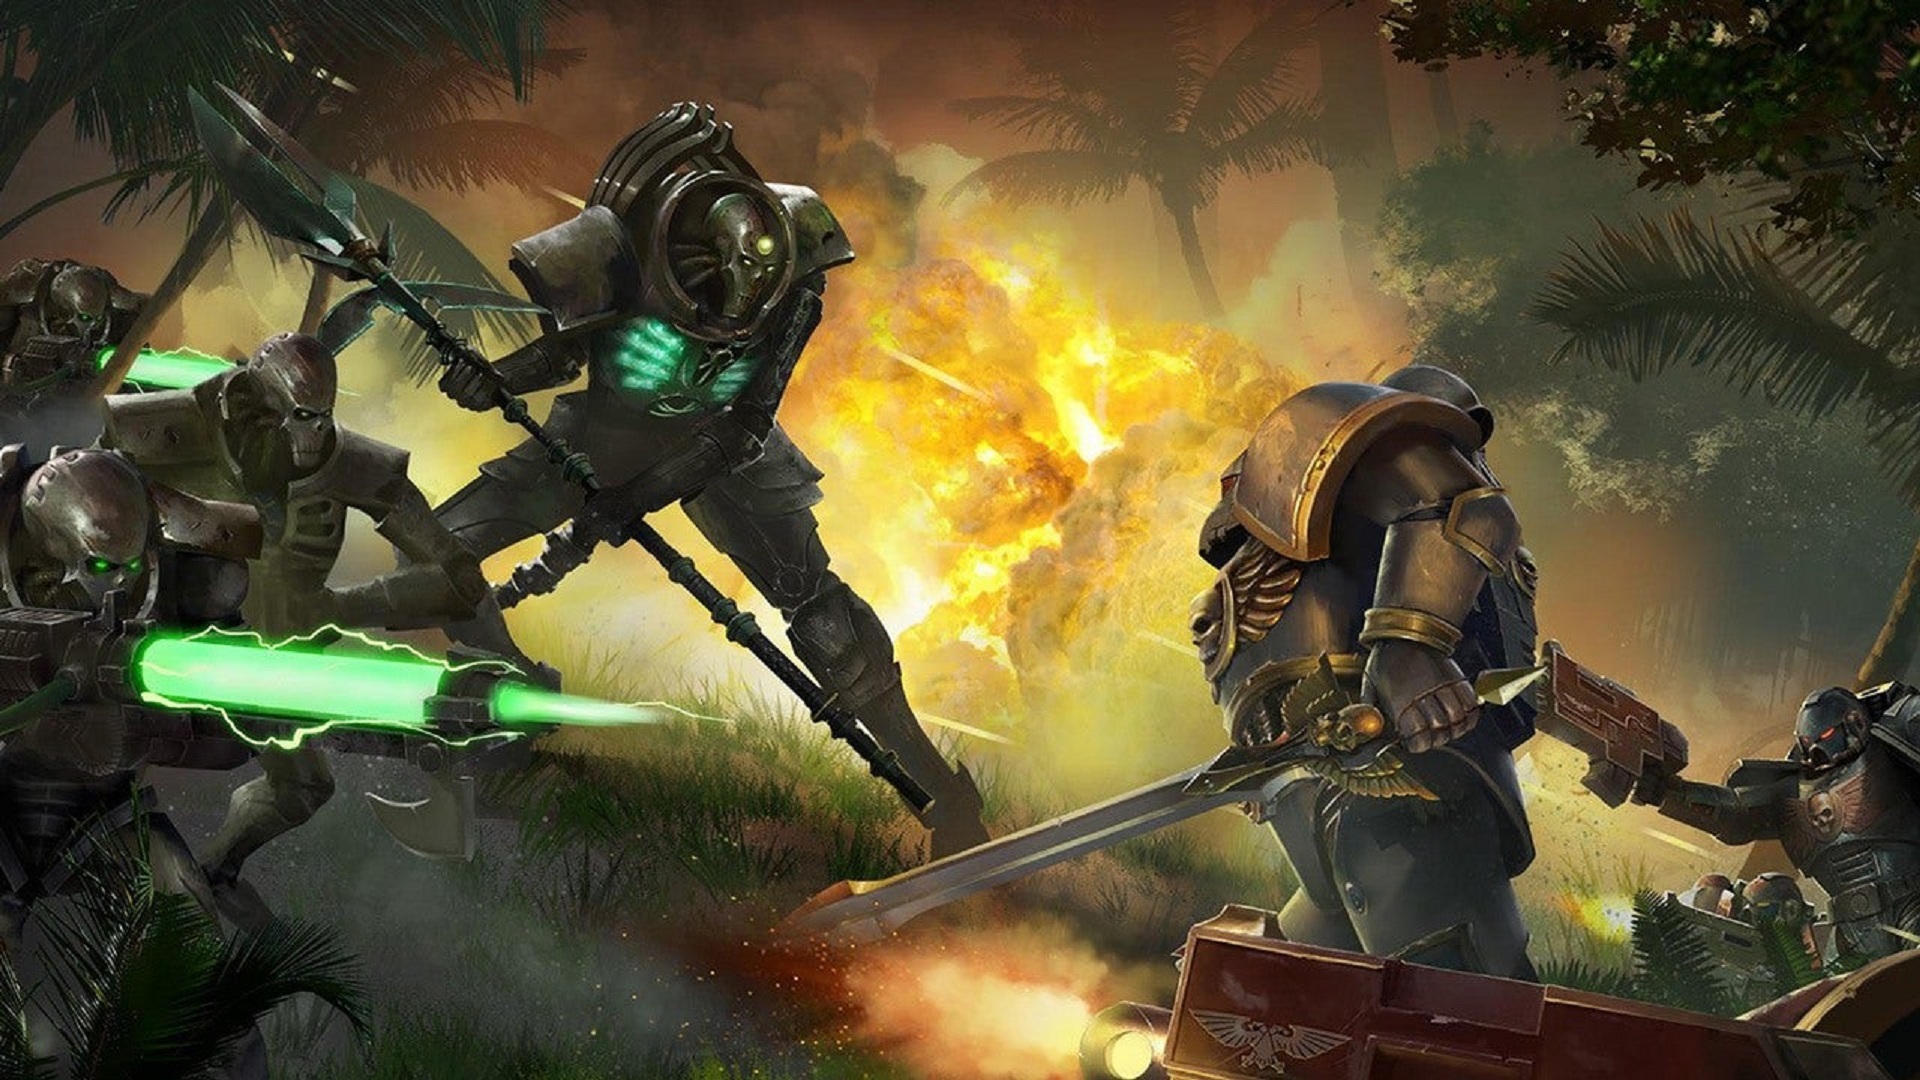 В Epic Games Store началась бесплатная раздача стратегии Warhammer 40,000: Gladius — Relics of War